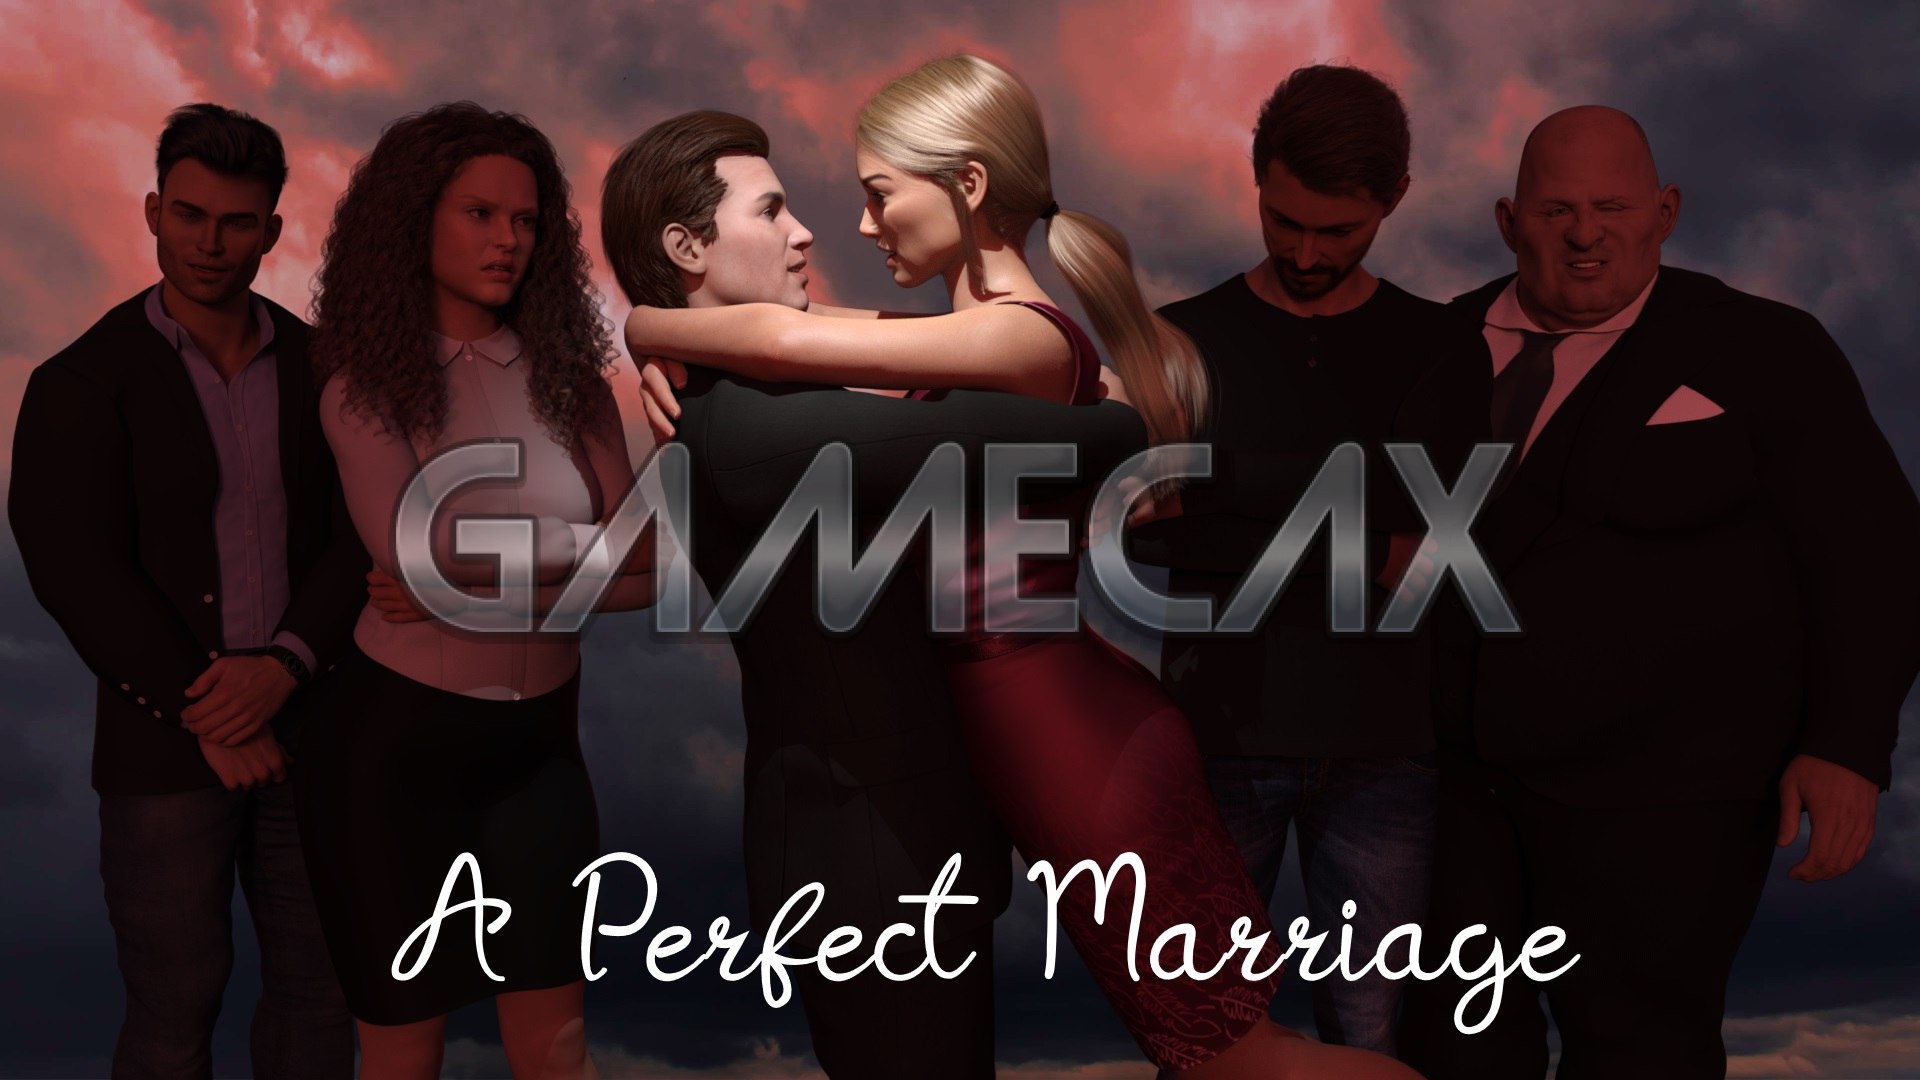 A Perfect Marriage [v0.5] [APK] ⋆ Gamecax